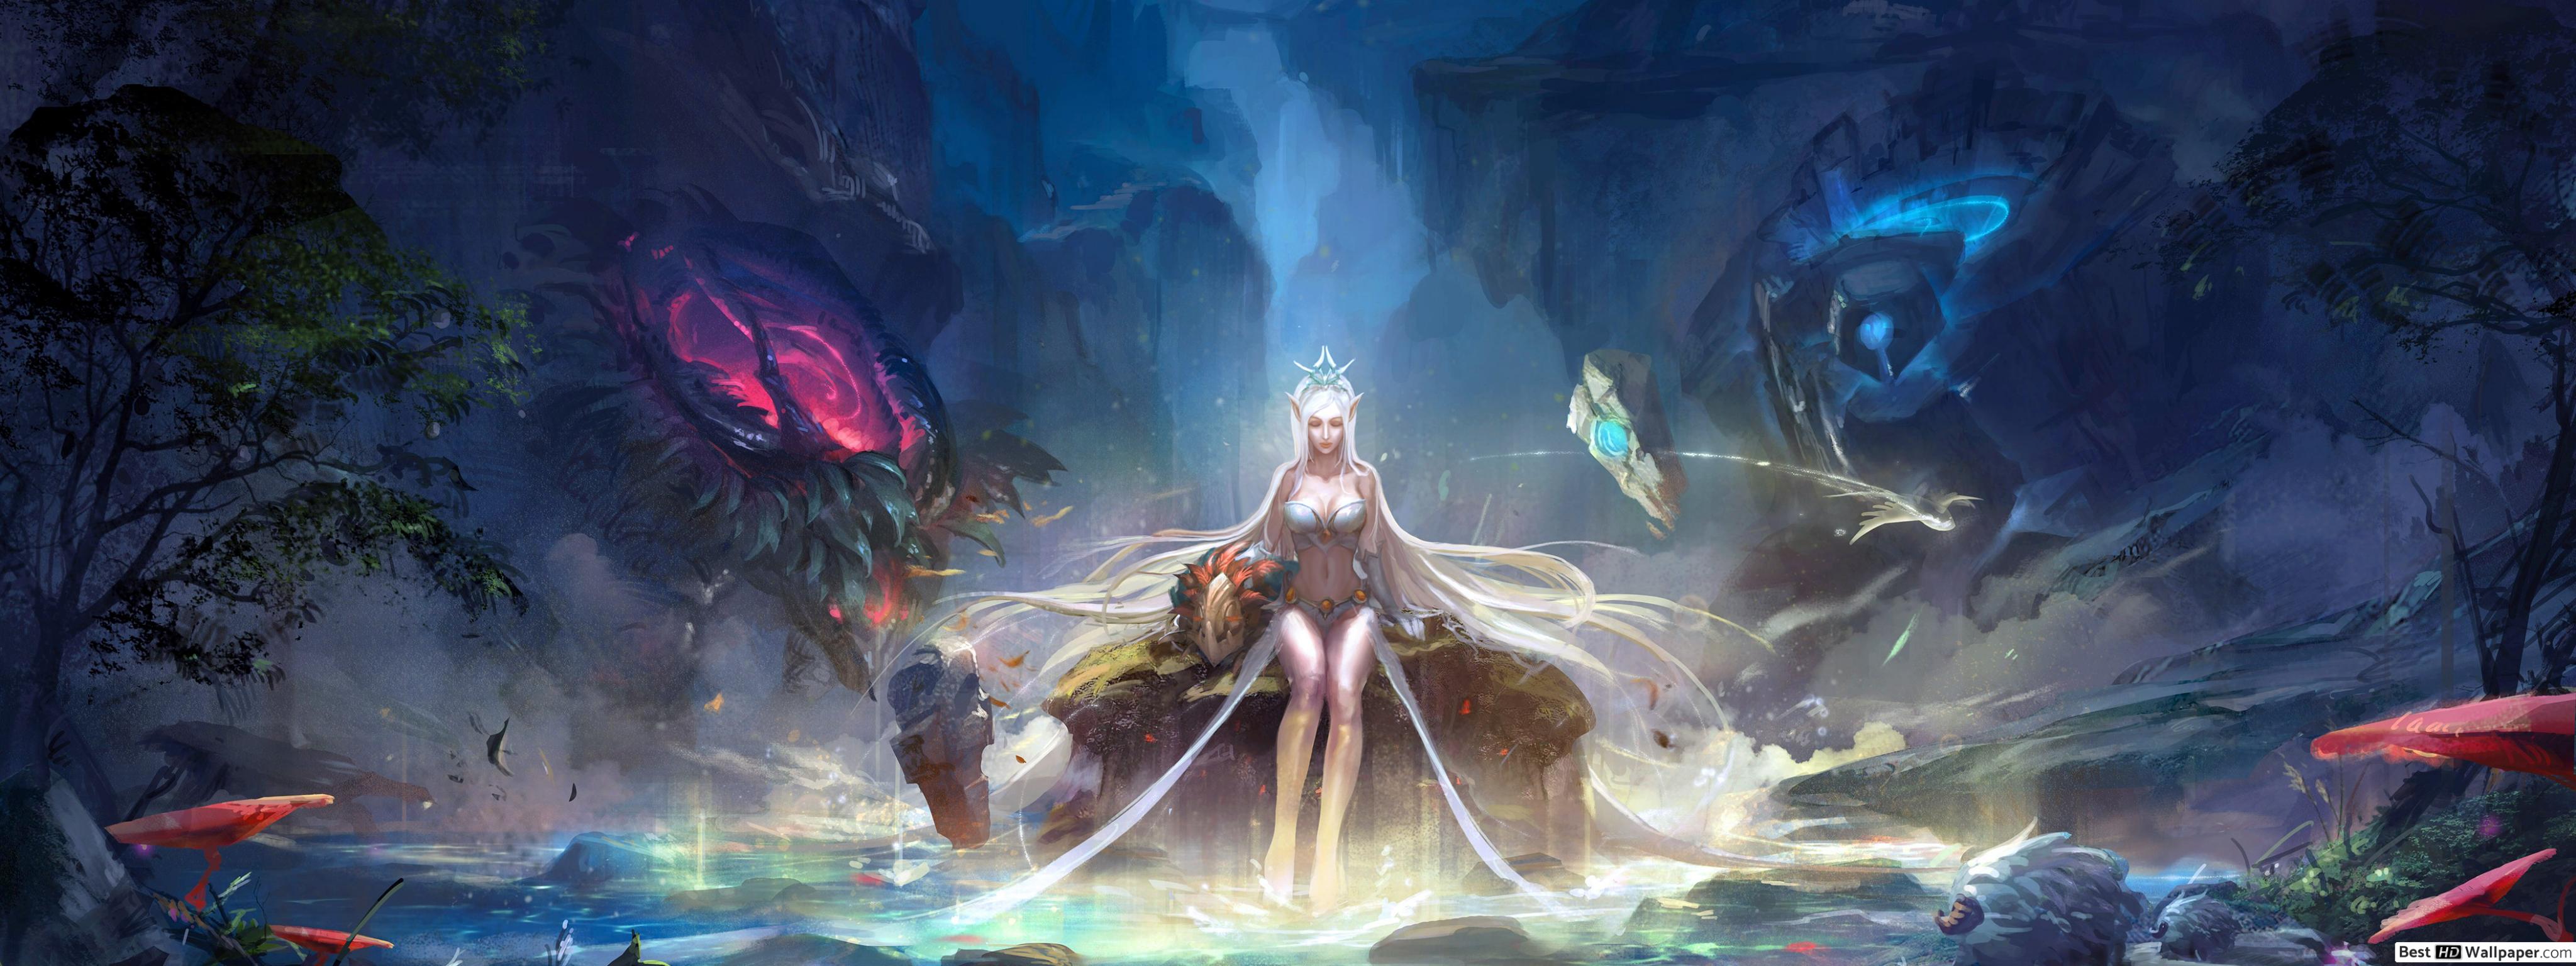 League Of Legends Janna Artwork , HD Wallpaper & Backgrounds